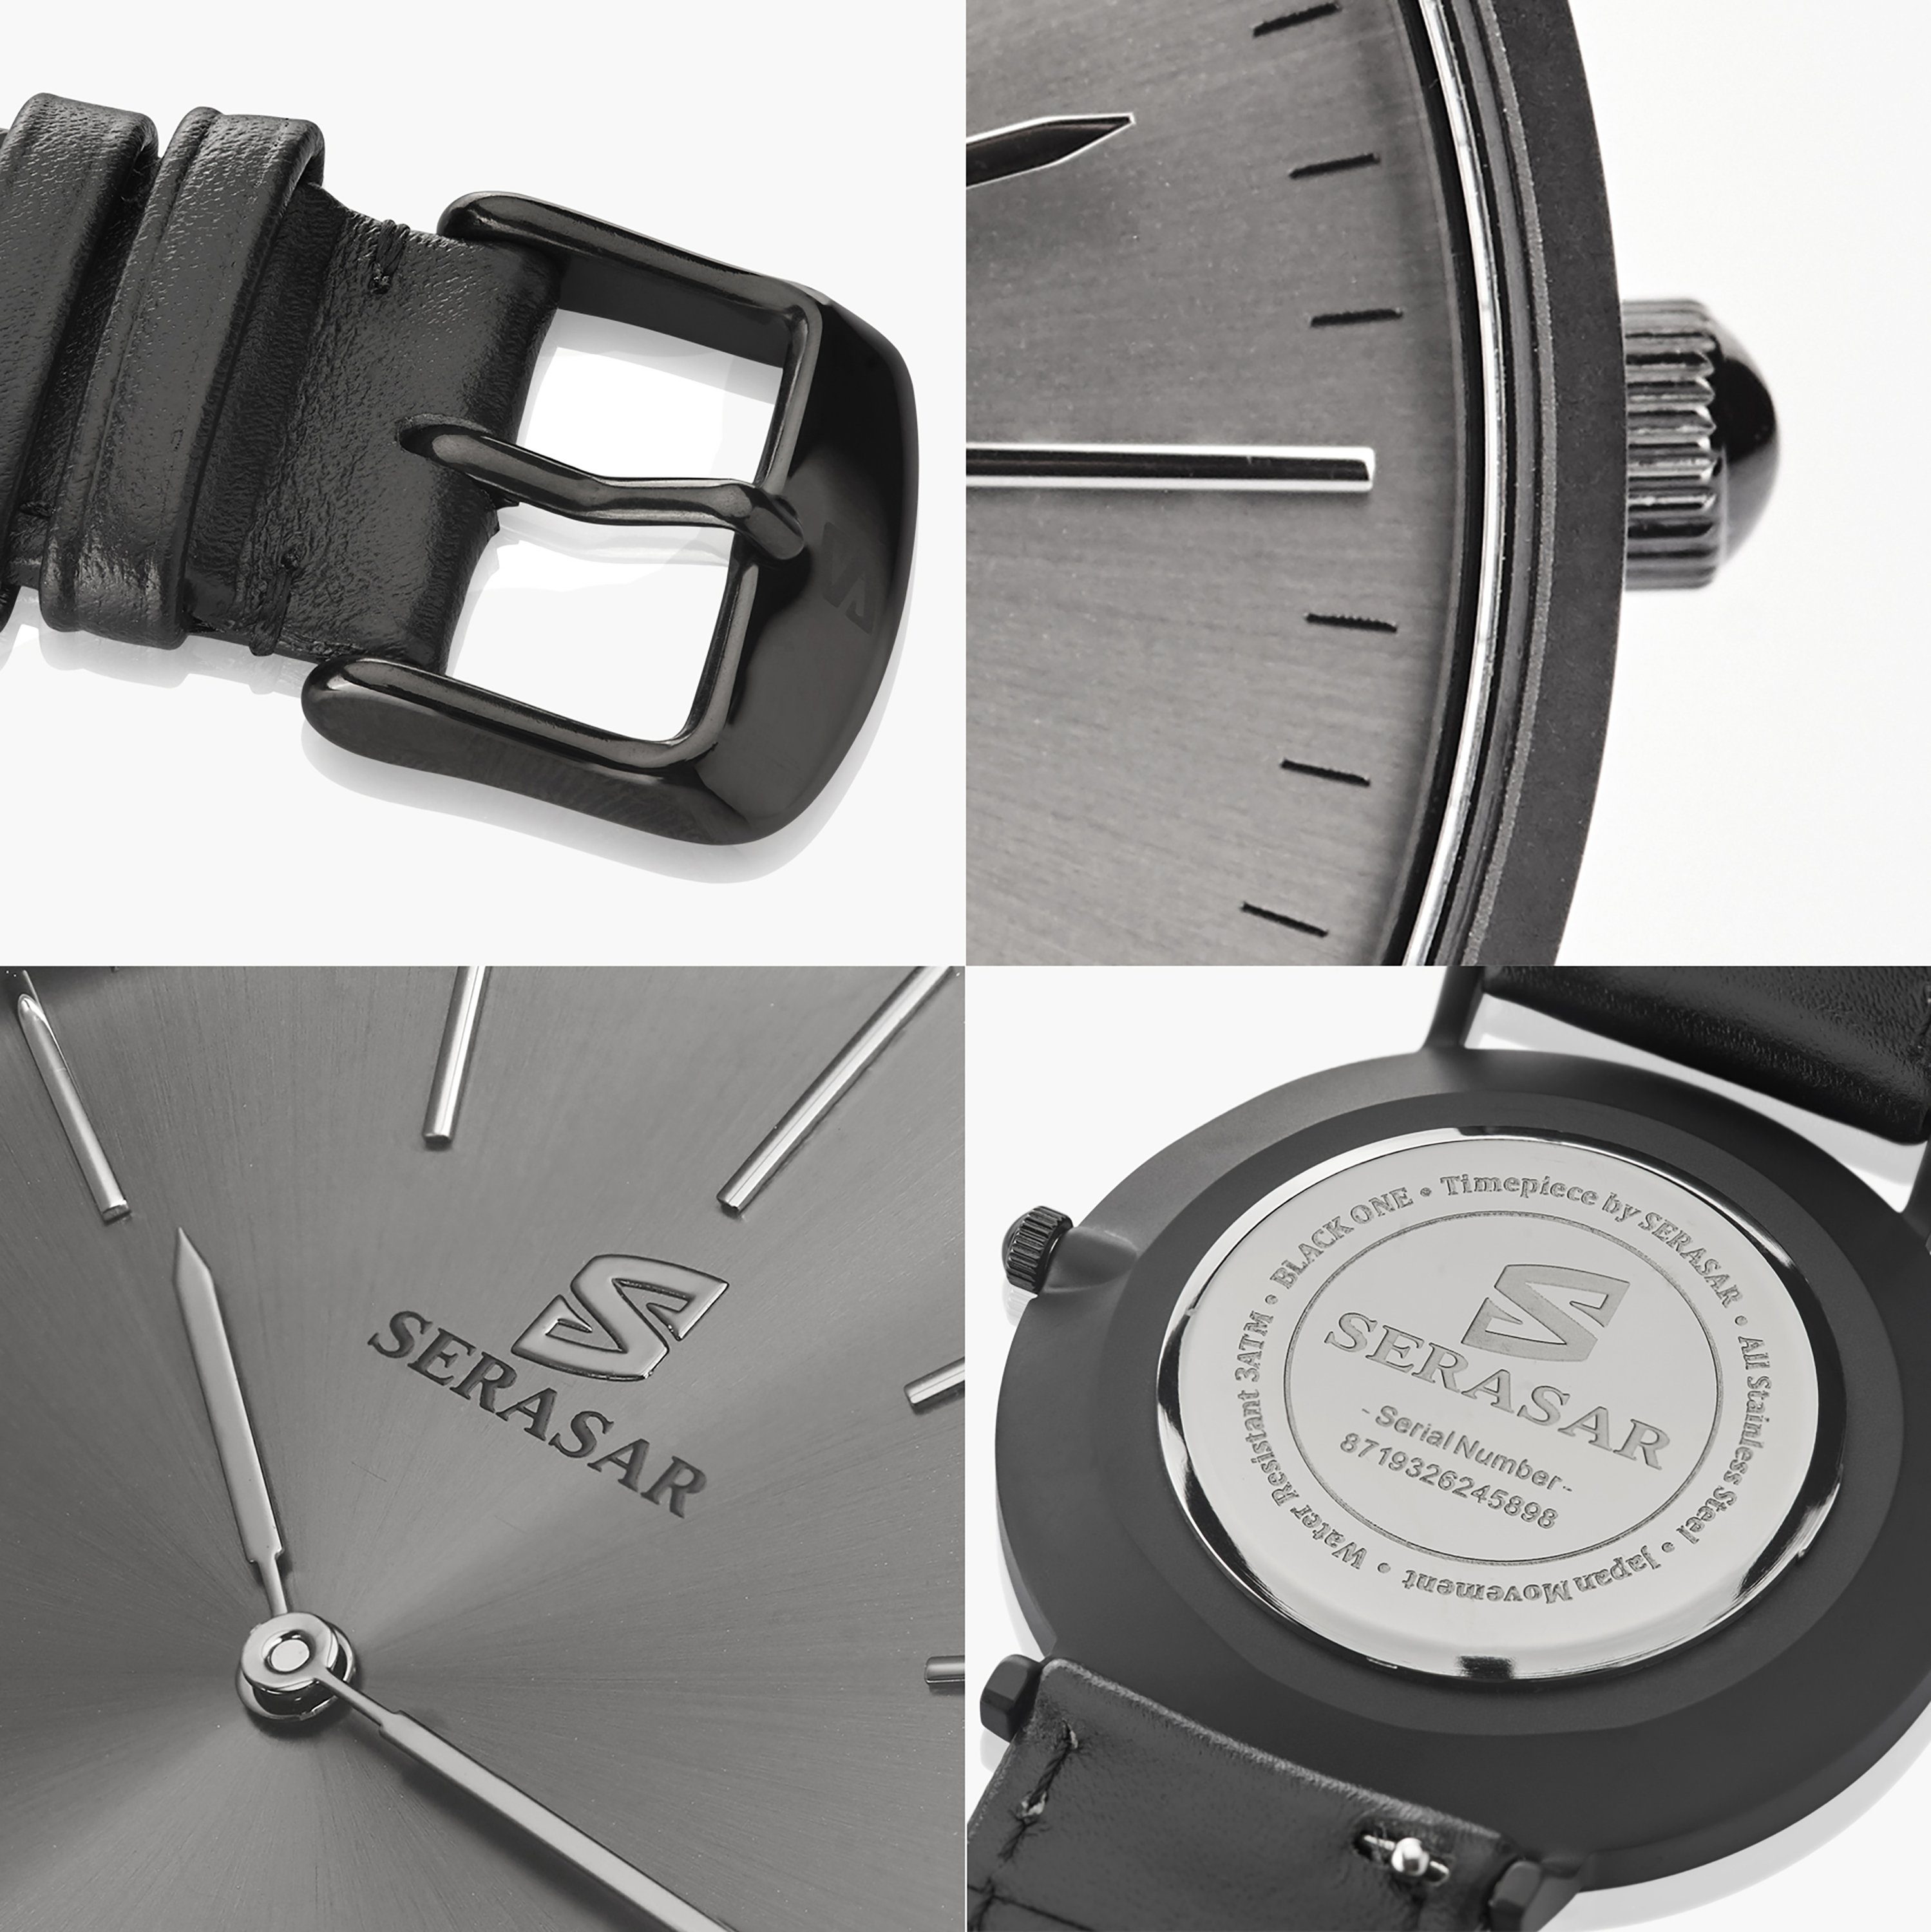 ONE", (6mm) Quarzuhr mit sehr sehr und Quarzwerk Japanischem (35gr) leicht SERASAR flach "BLACK (1-tlg), Armbanduhr 